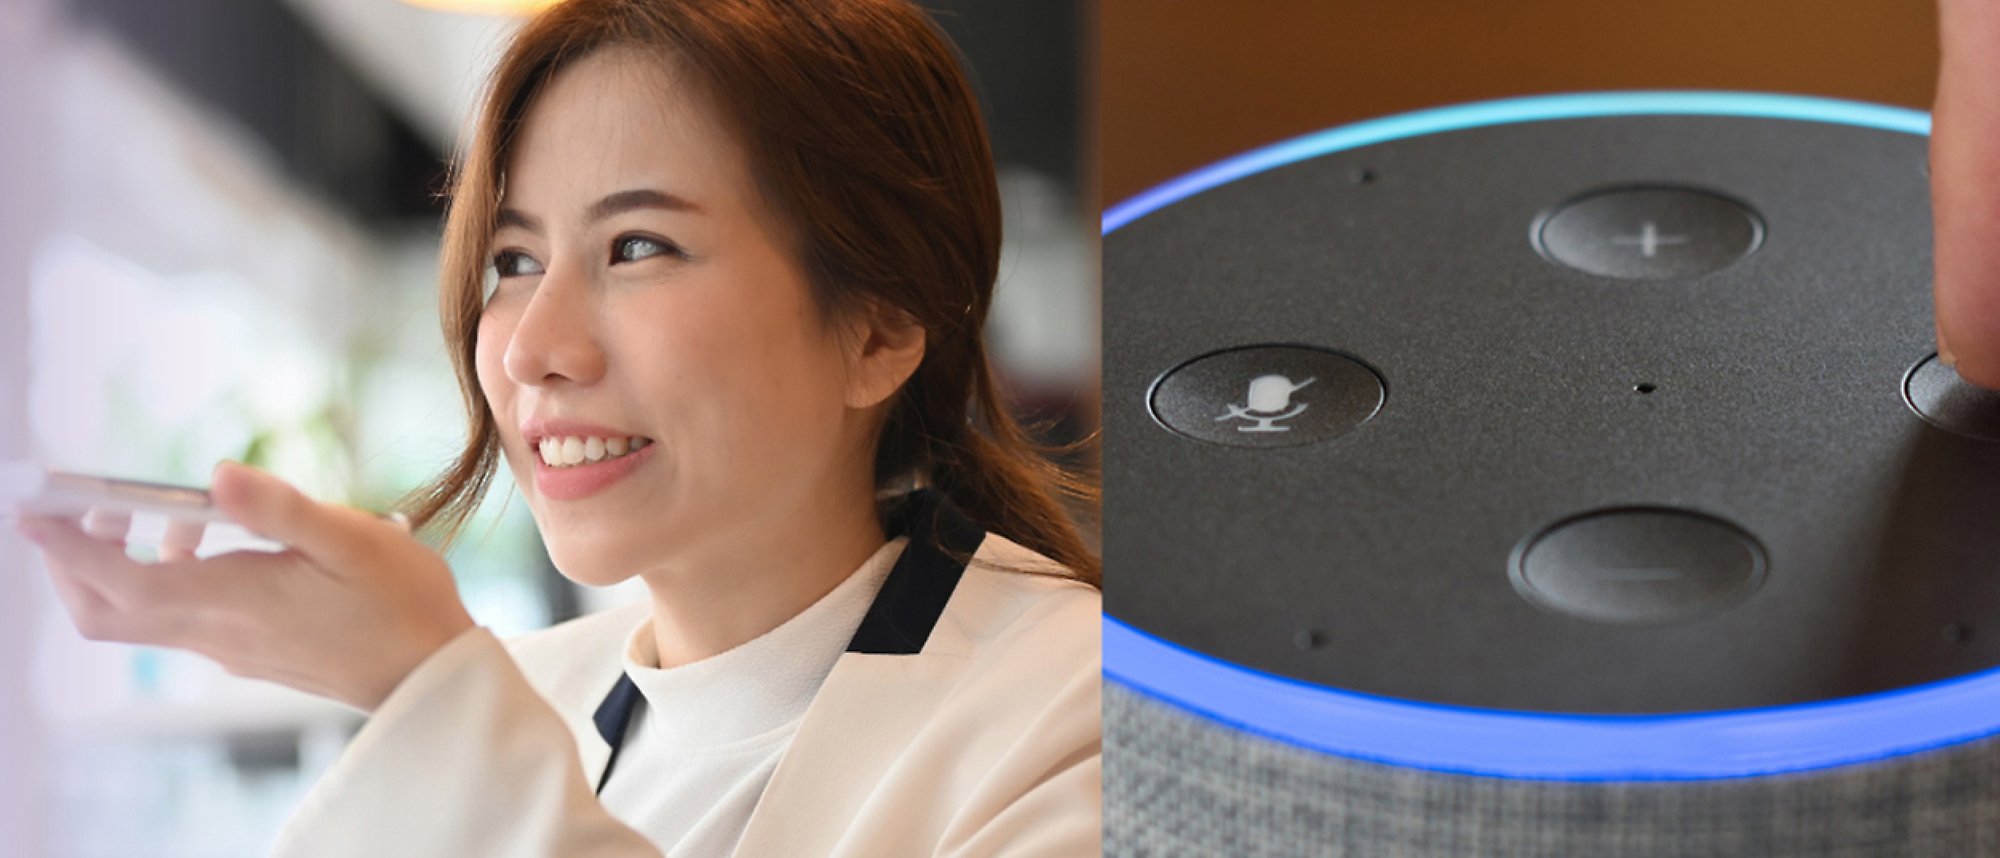 Una mujer hablando por teléfono y una imagen de Alexa de Amazon con luces azules y los controles de sonido